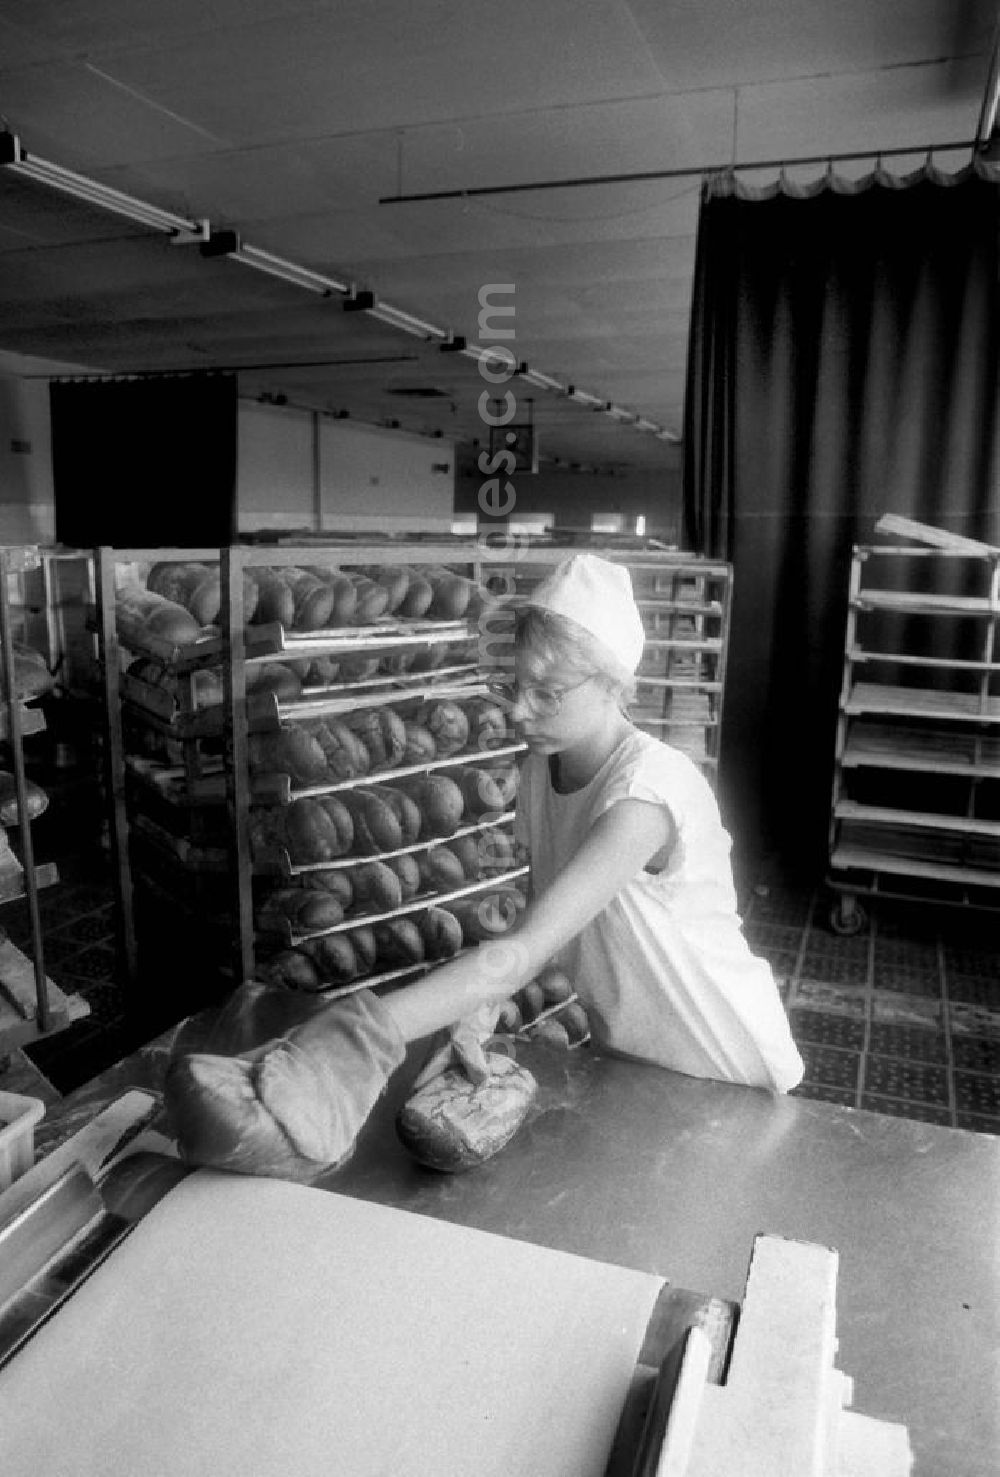 GDR picture archive: Berlin - Eine Arbeiterin einer Bäckerei in Berlin-Heinersdorf nimmt die fertig gebackenen und noch heißen Brote / Brotlaibe vom Fließband. Im Hintergrund sind Mischbrote im Regal gestapelt.